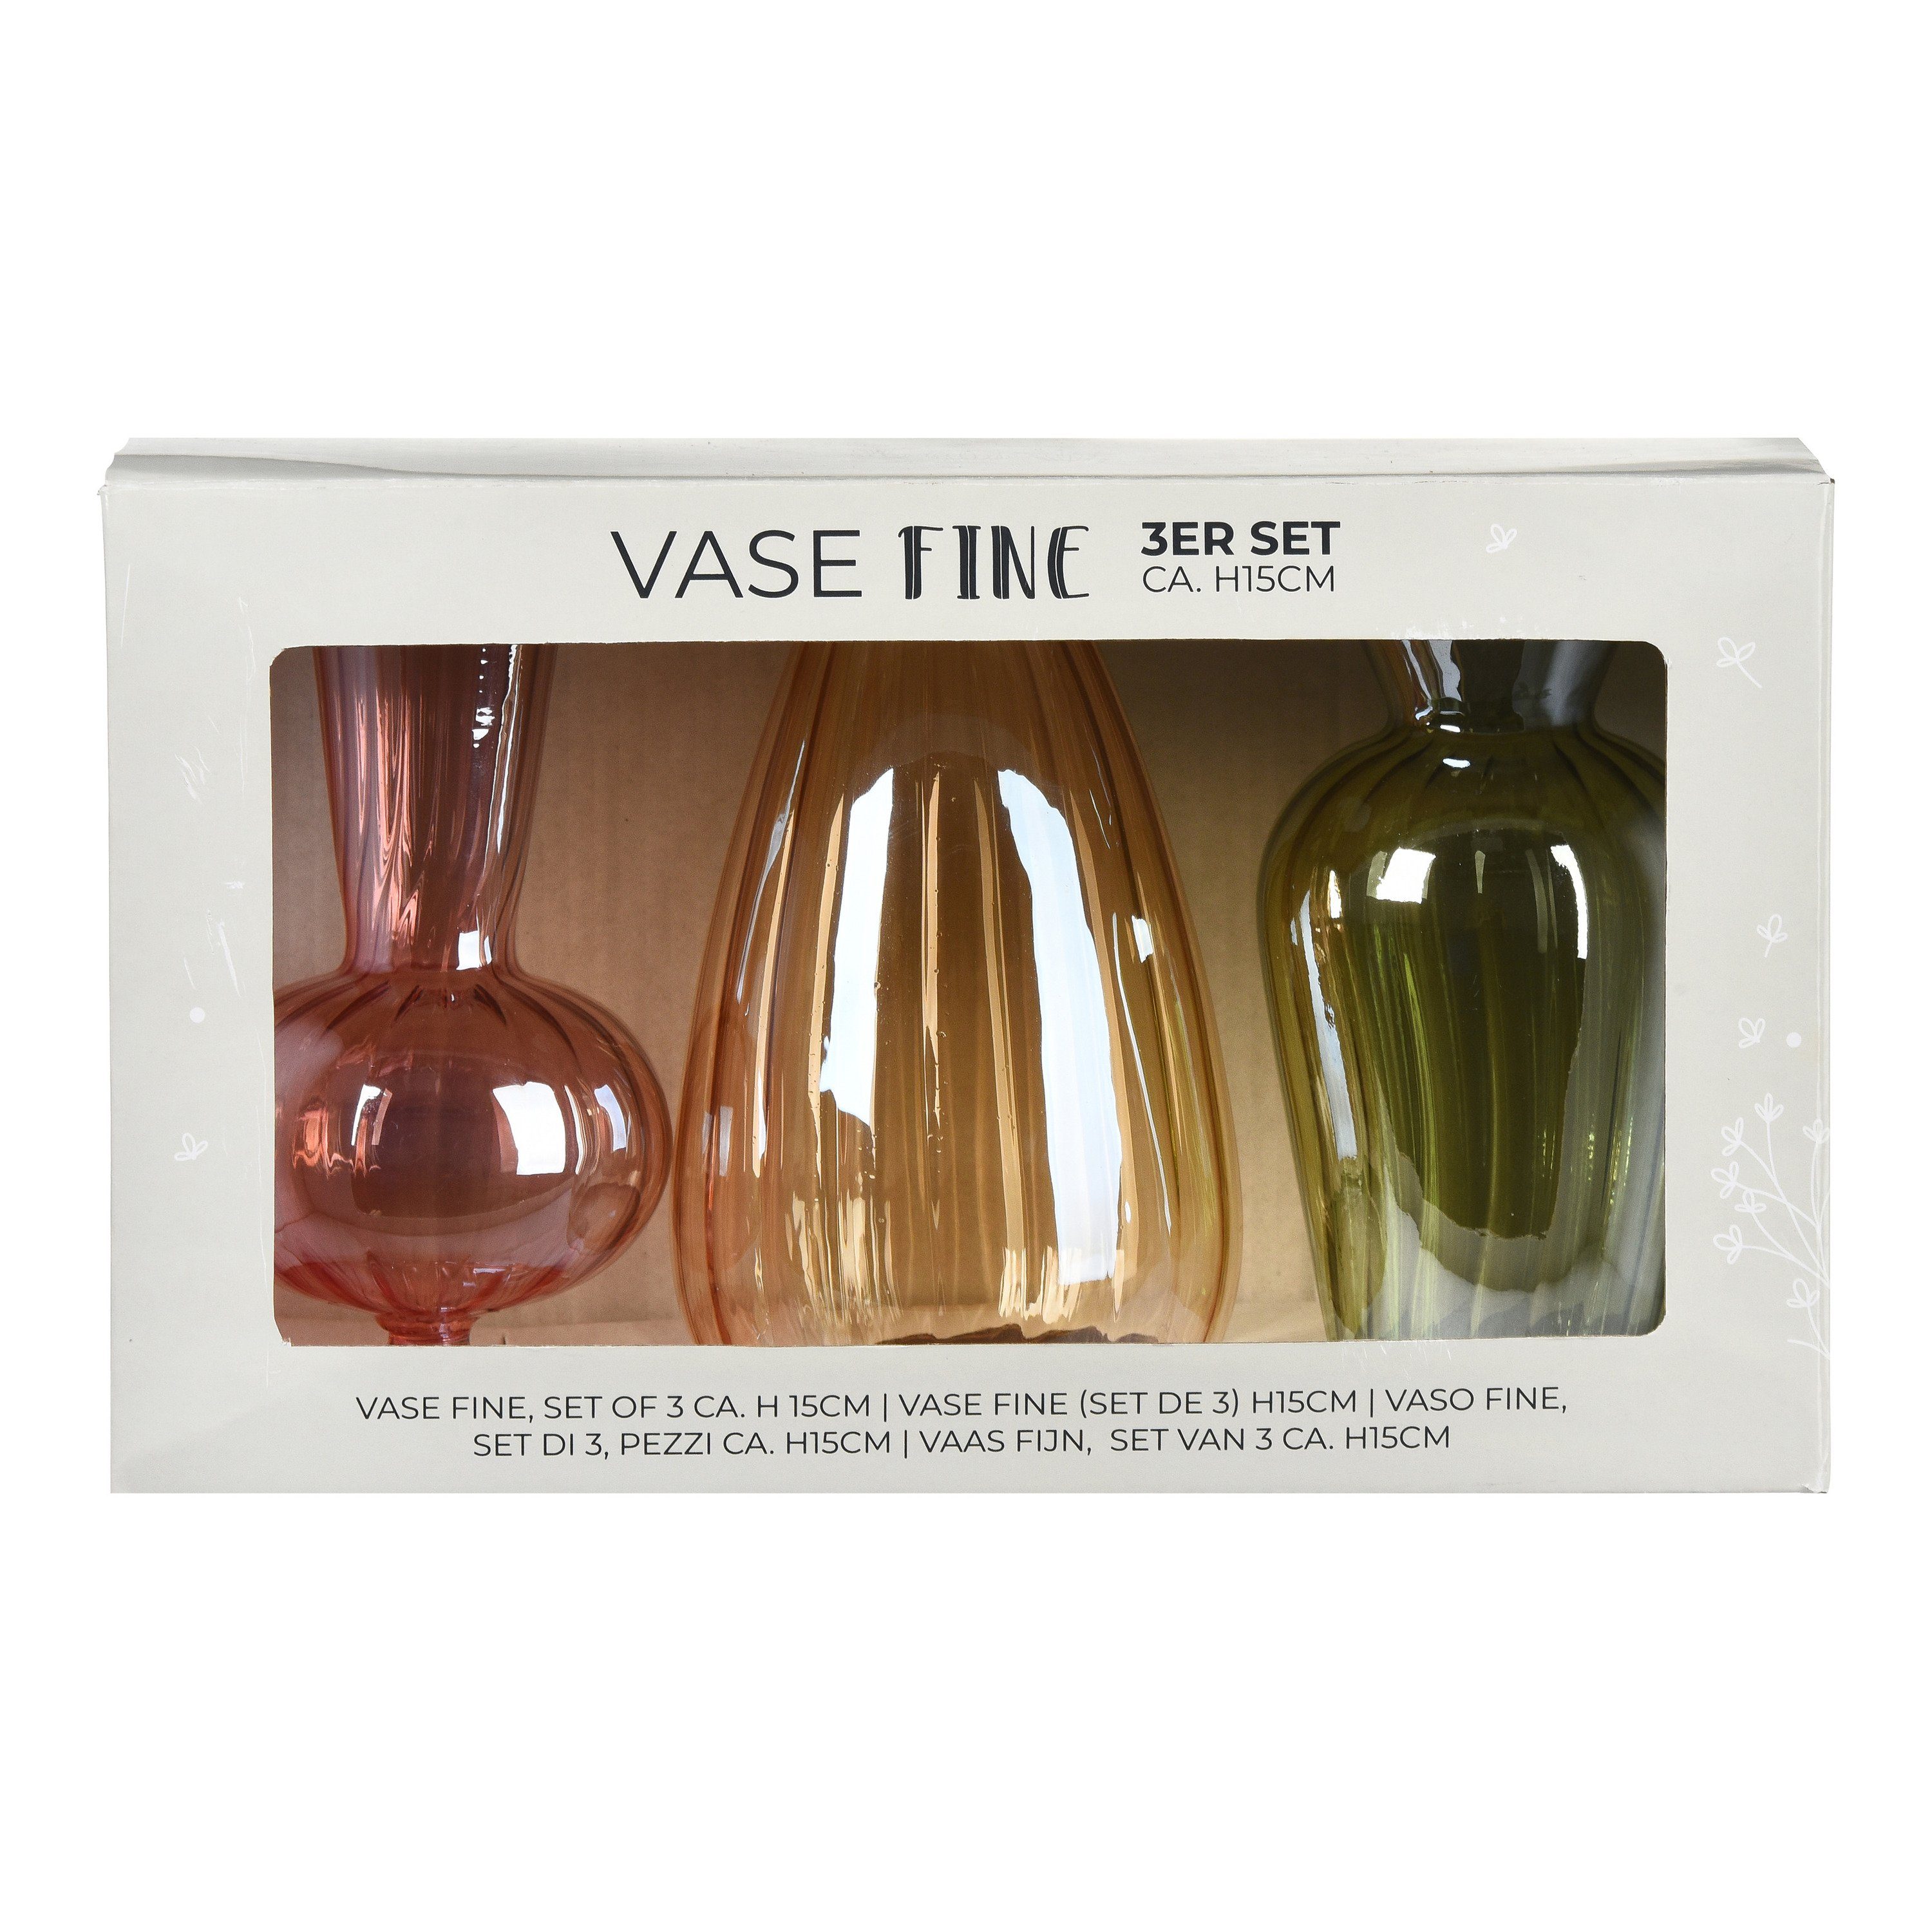 3 Fine Bunt Formen) Vasen-Set Vasen Depot (Packung, Dekovase in unterschiedlichen